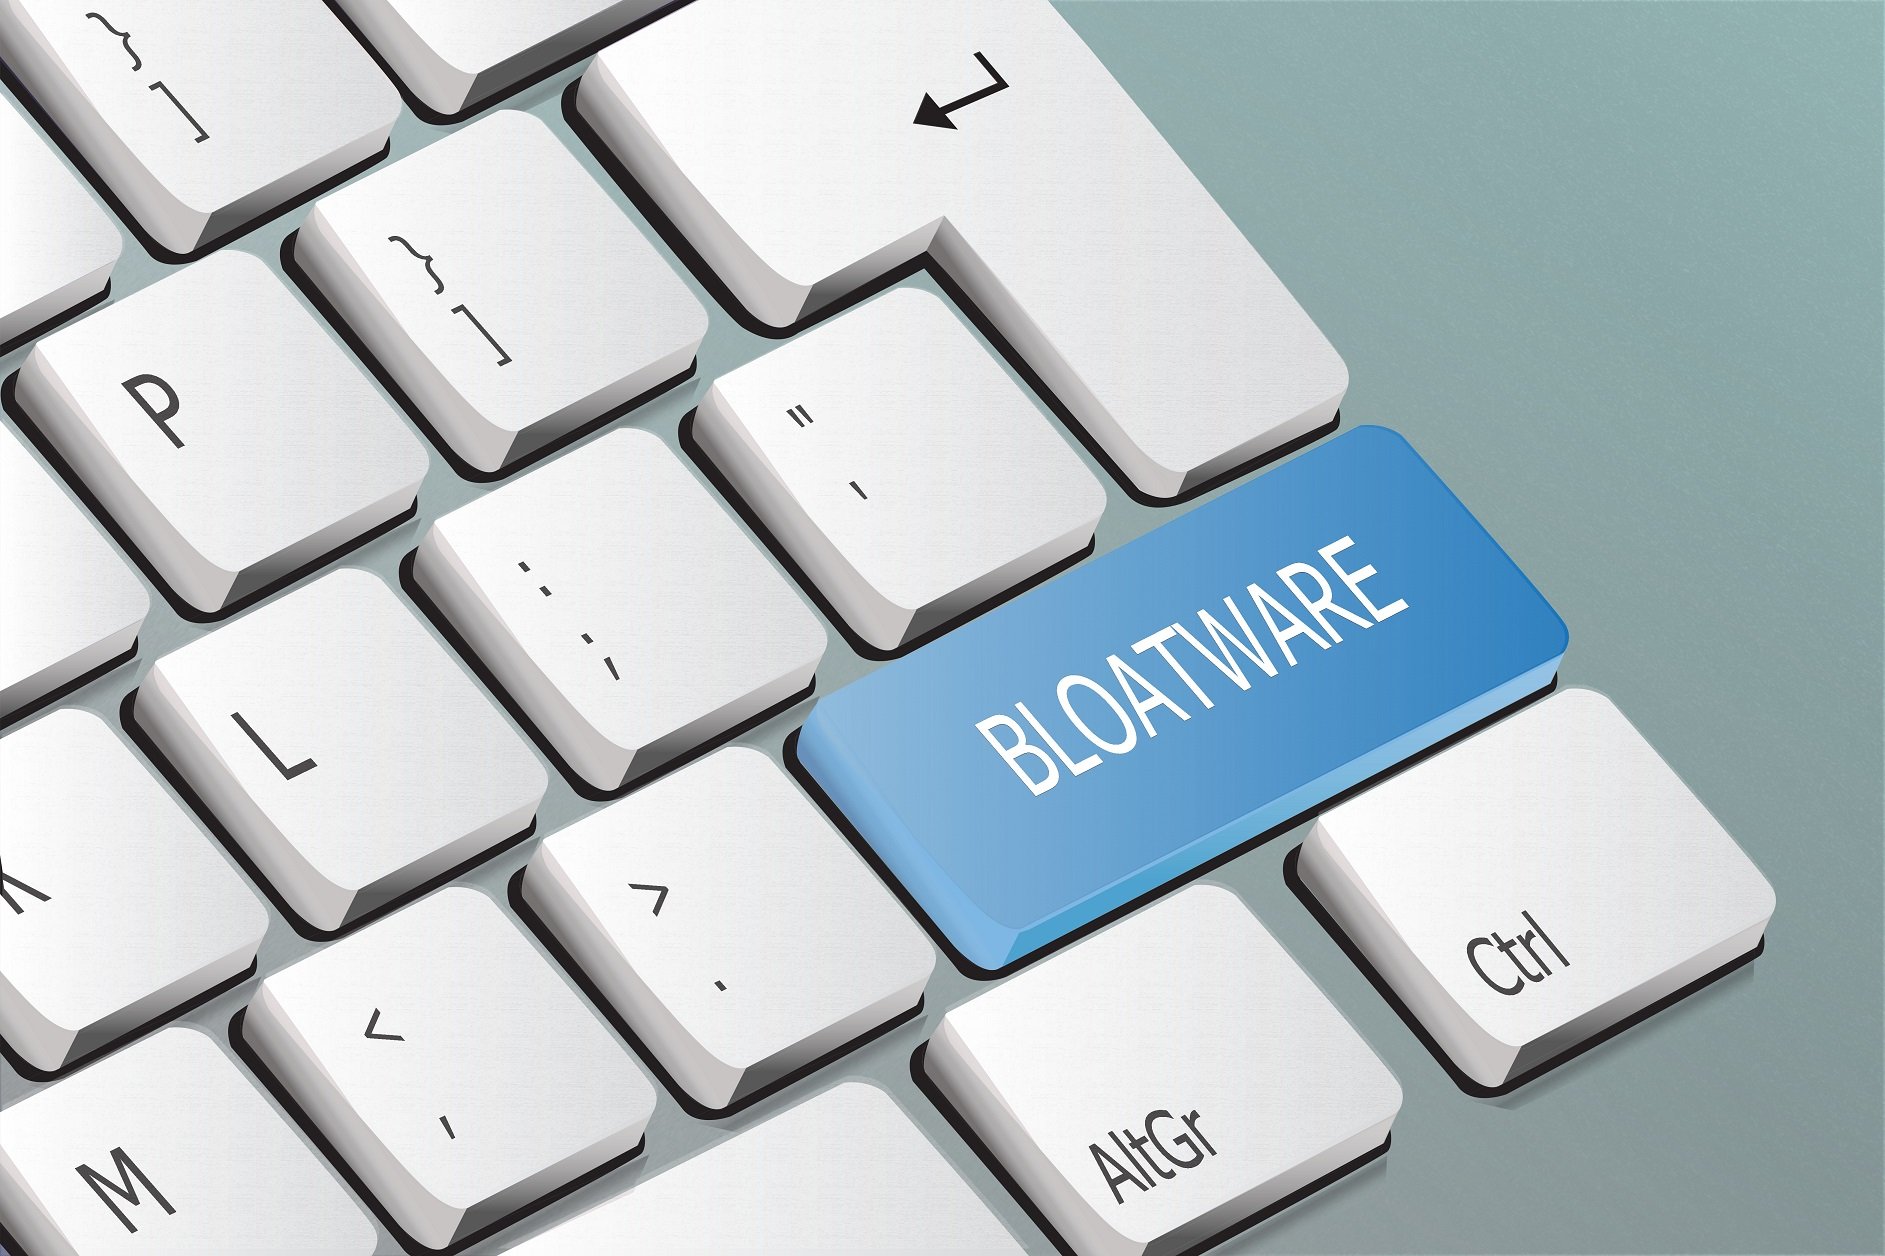 Bloatware-Taste auf Keyboard